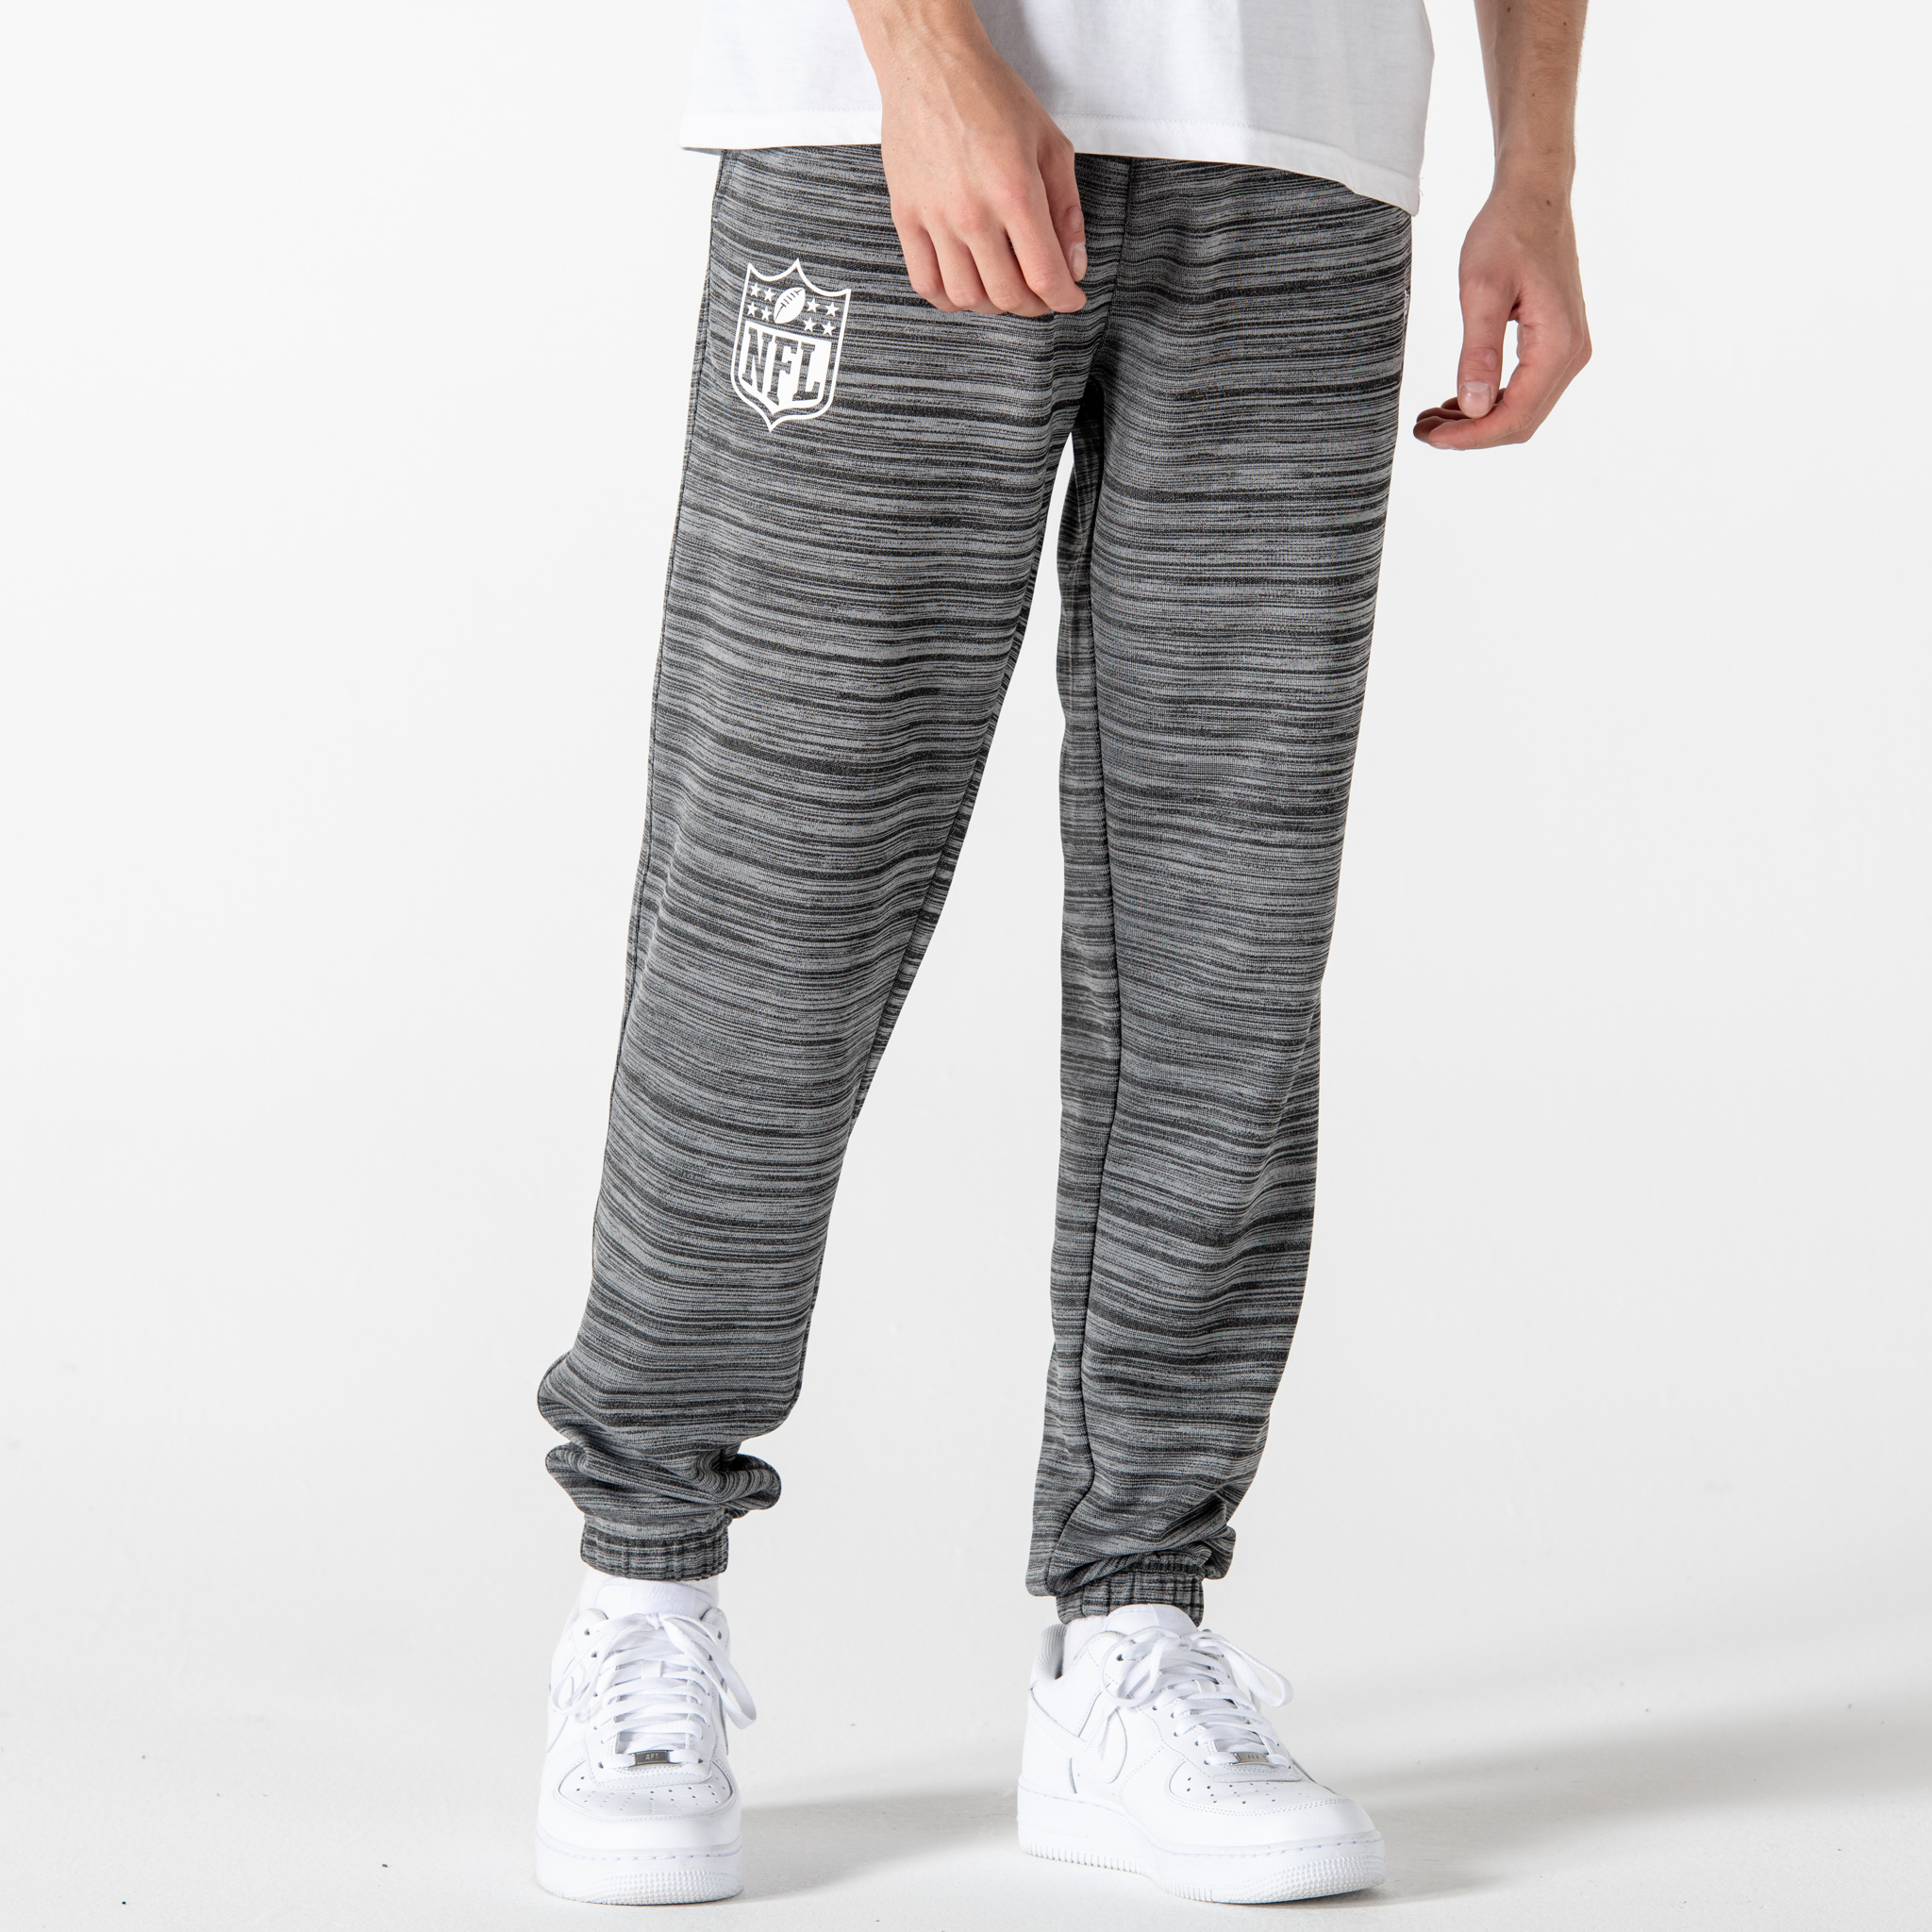 Pantalon de jogging gris technique logo NFL